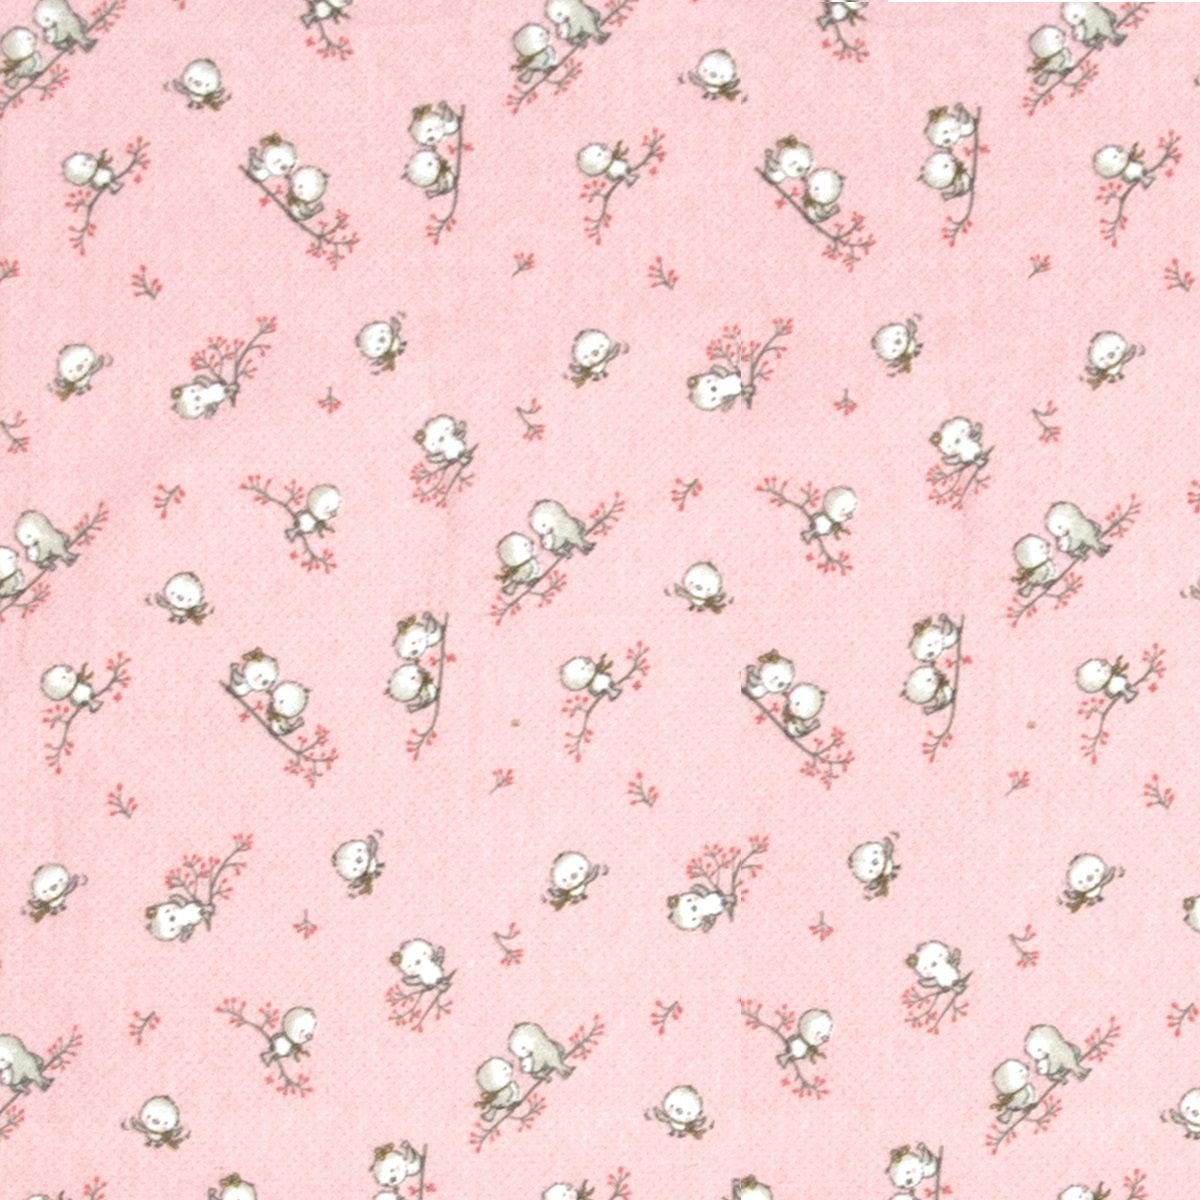 ΠΑΝΑ ΦΑΝΕΛΑ bebe Birds 15 80Χ80 Pink Flannel cotton 100%